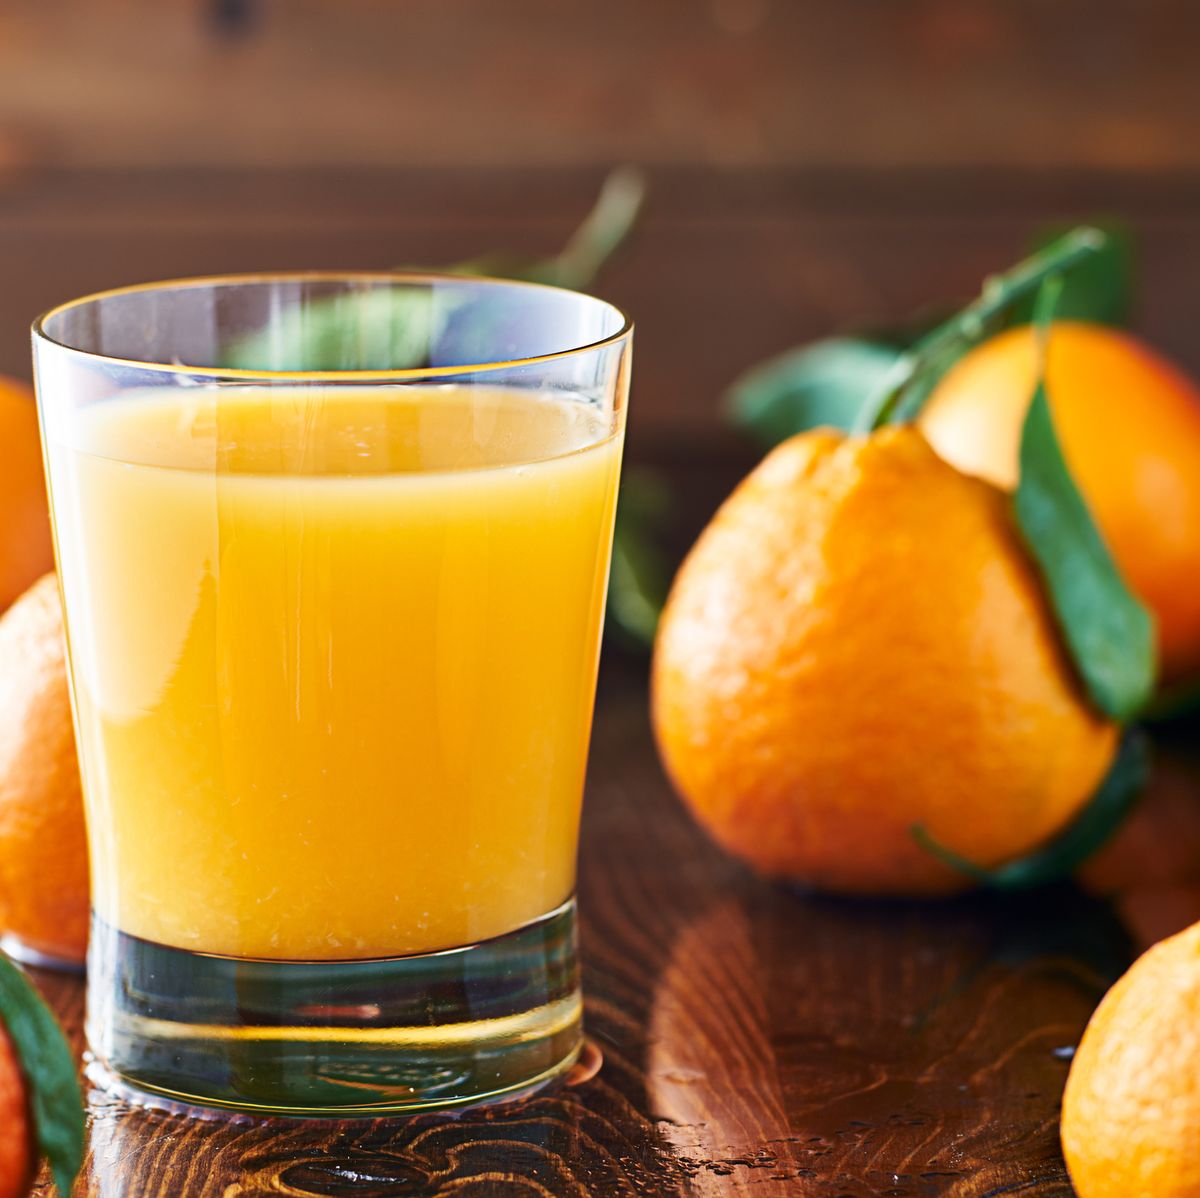 Orange, Vitamins, Minerals & Health Benefits